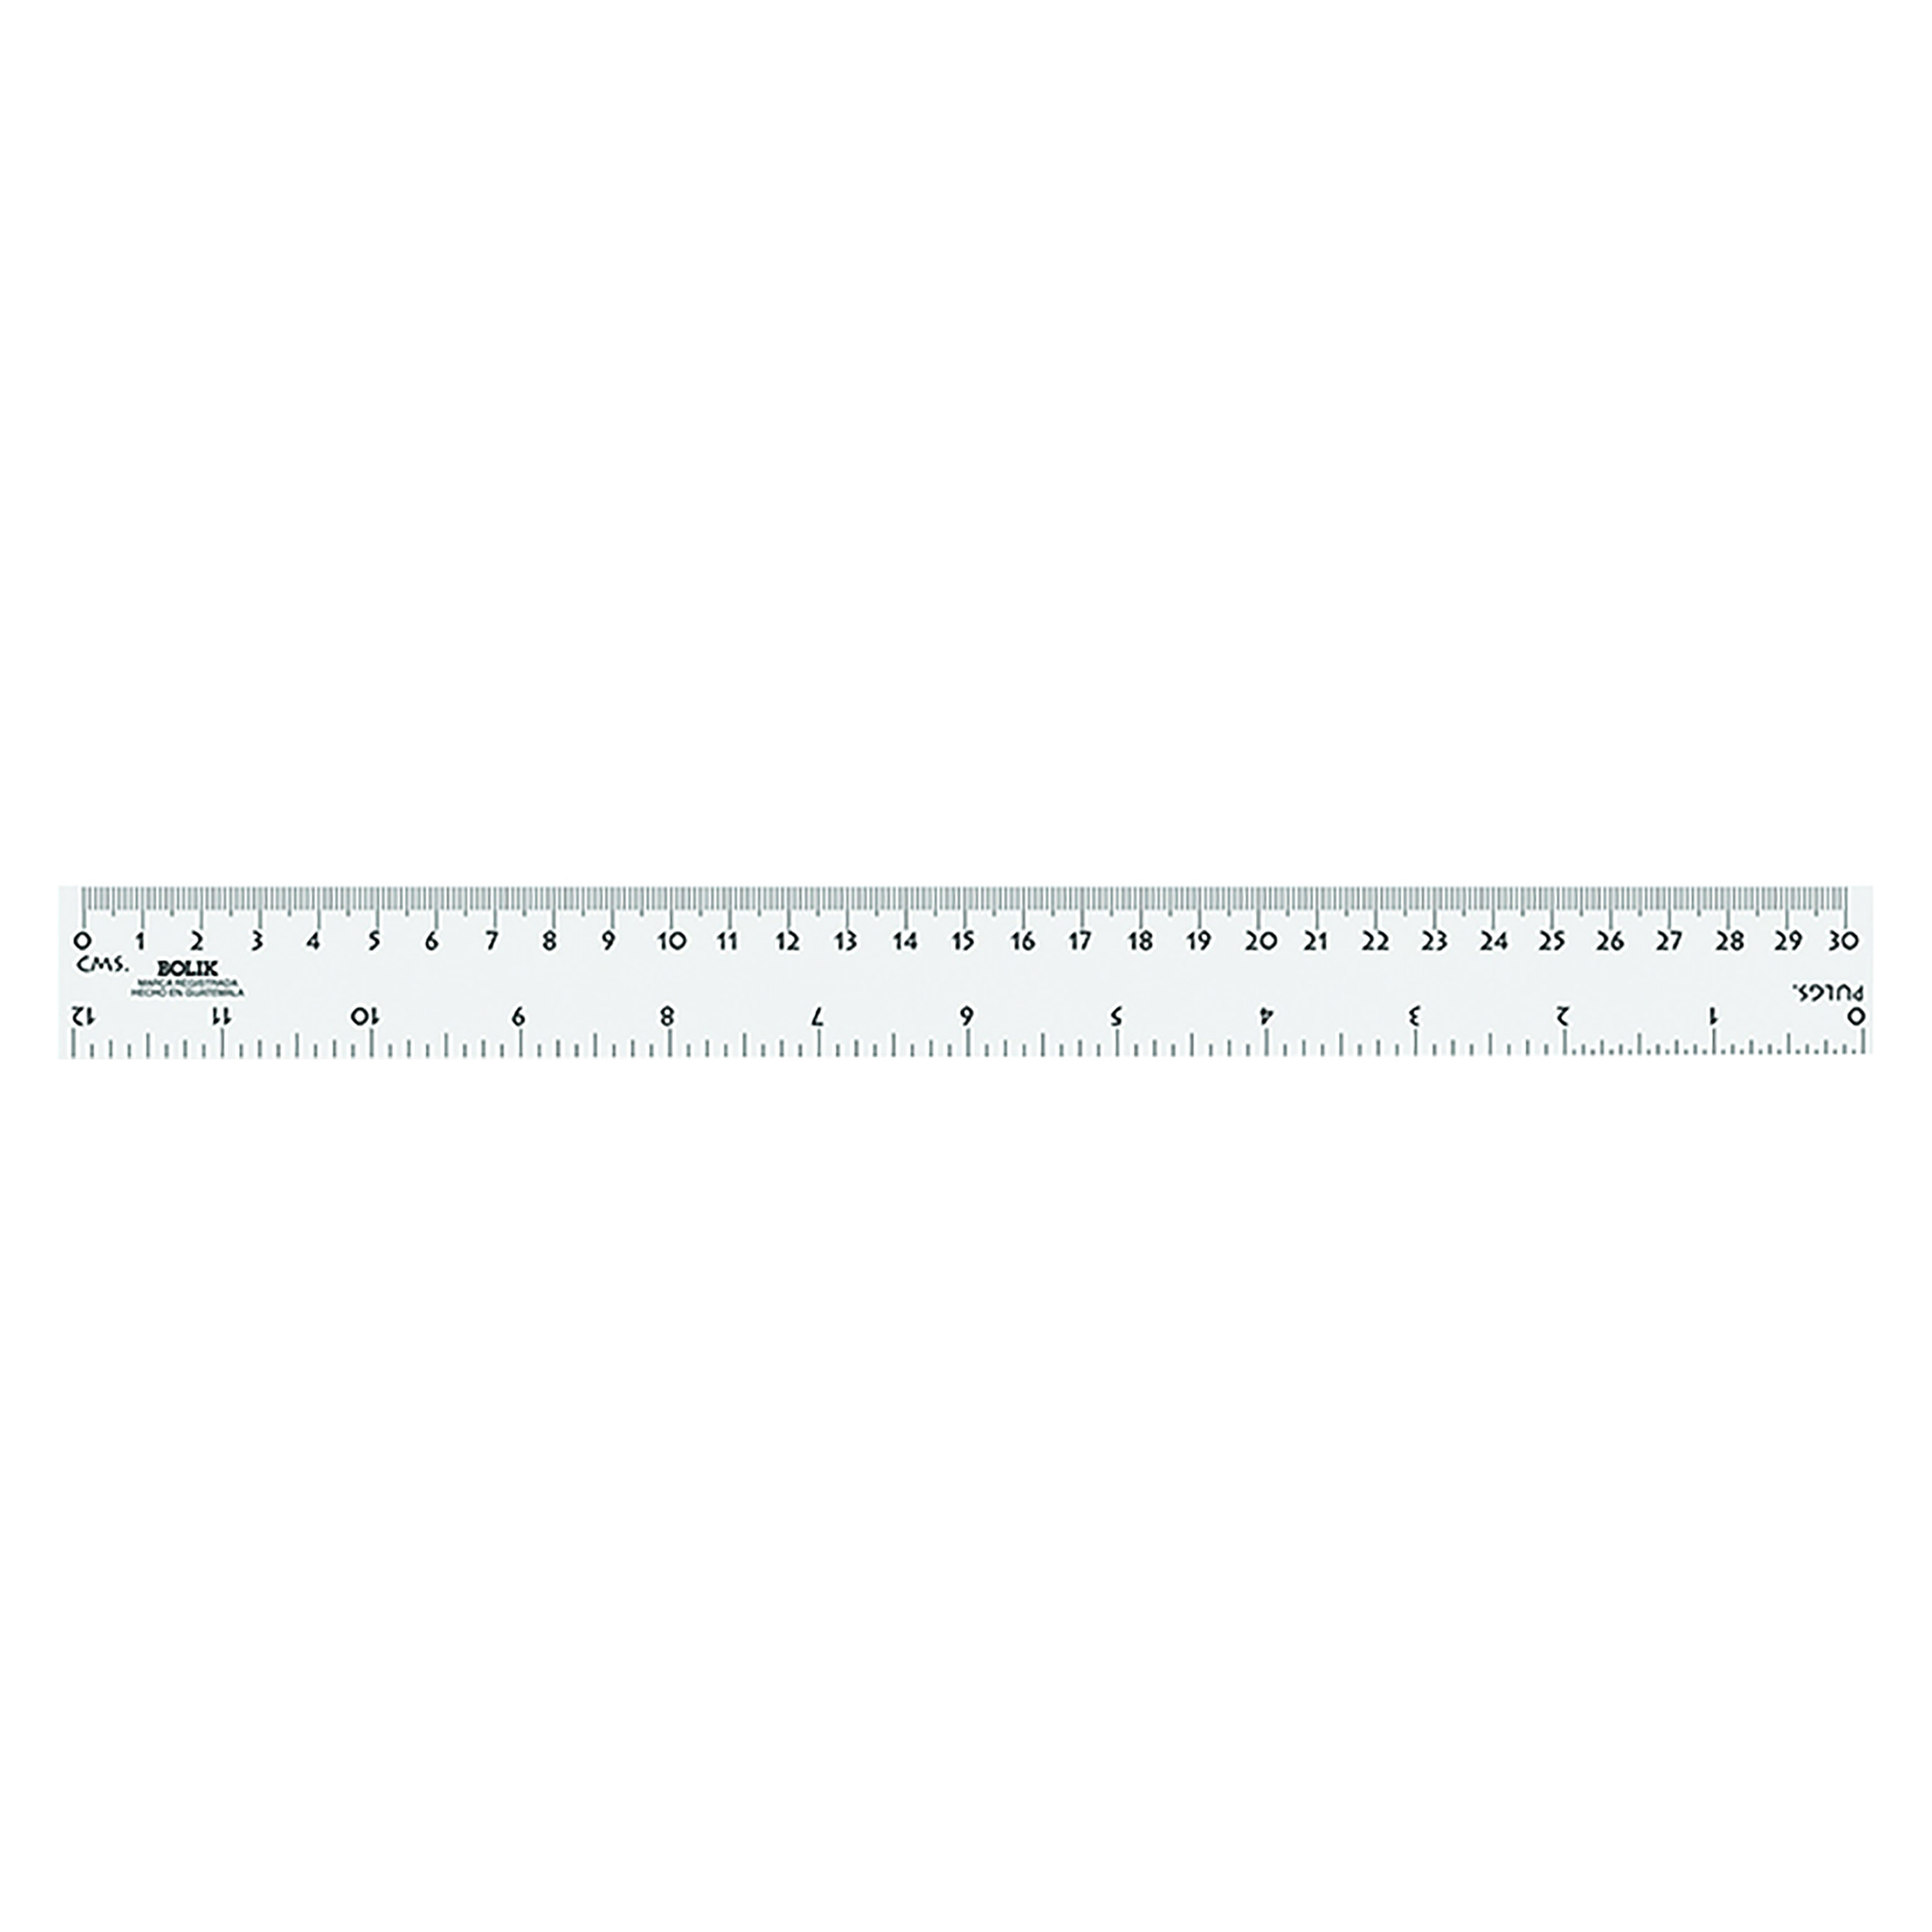 Regla-Bolik-30 Centimetros-Transparente-1 Unidad - Arimany